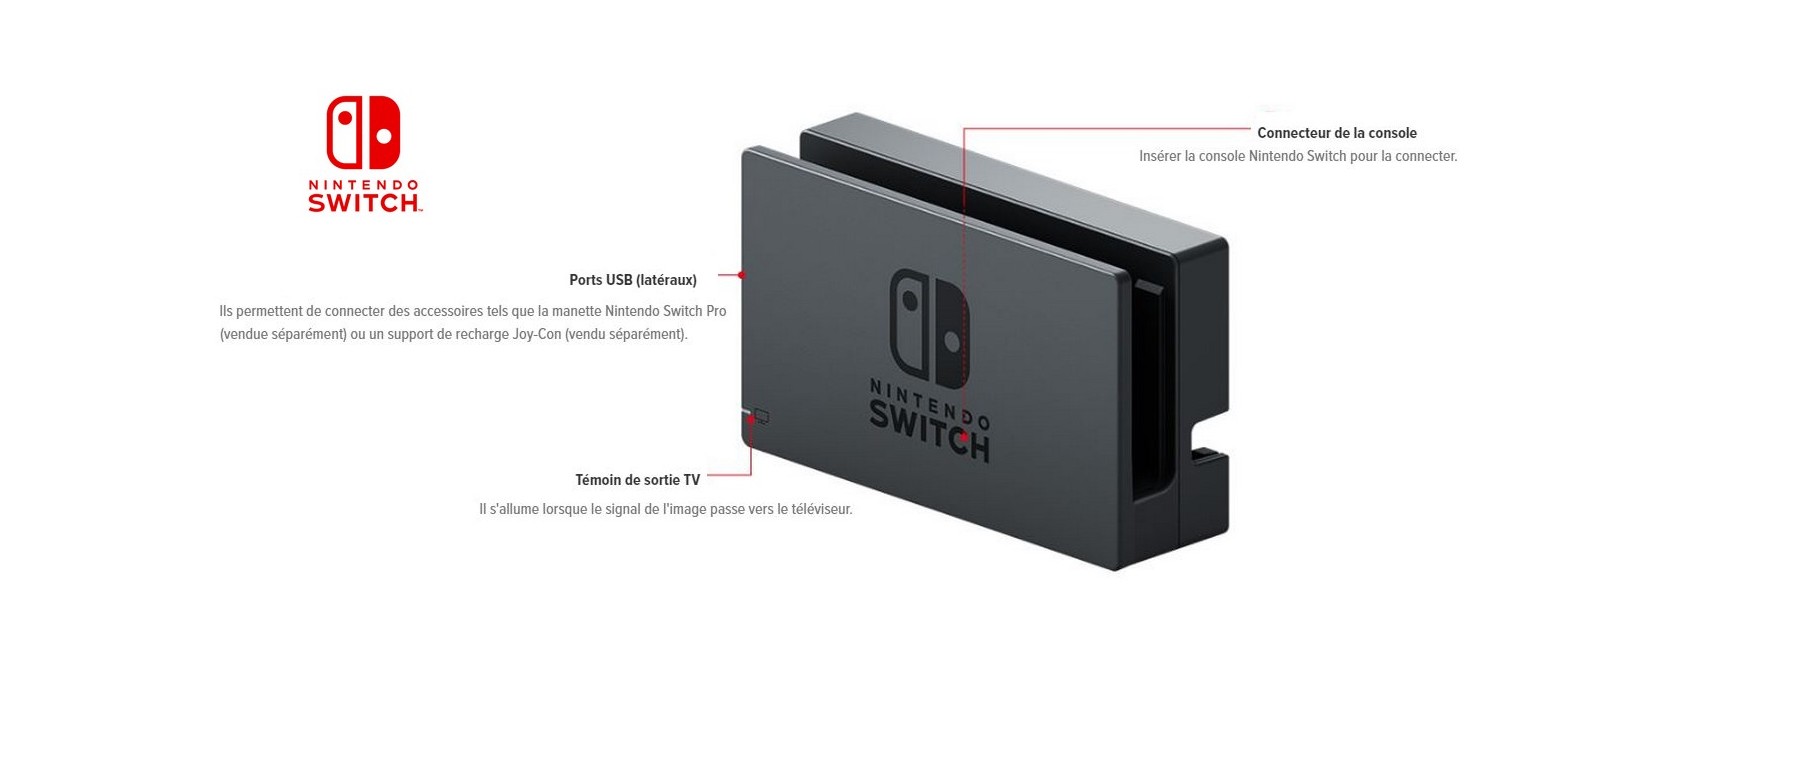 Nintendo Switch : un coup d'oeil à l'intérieur de la station d